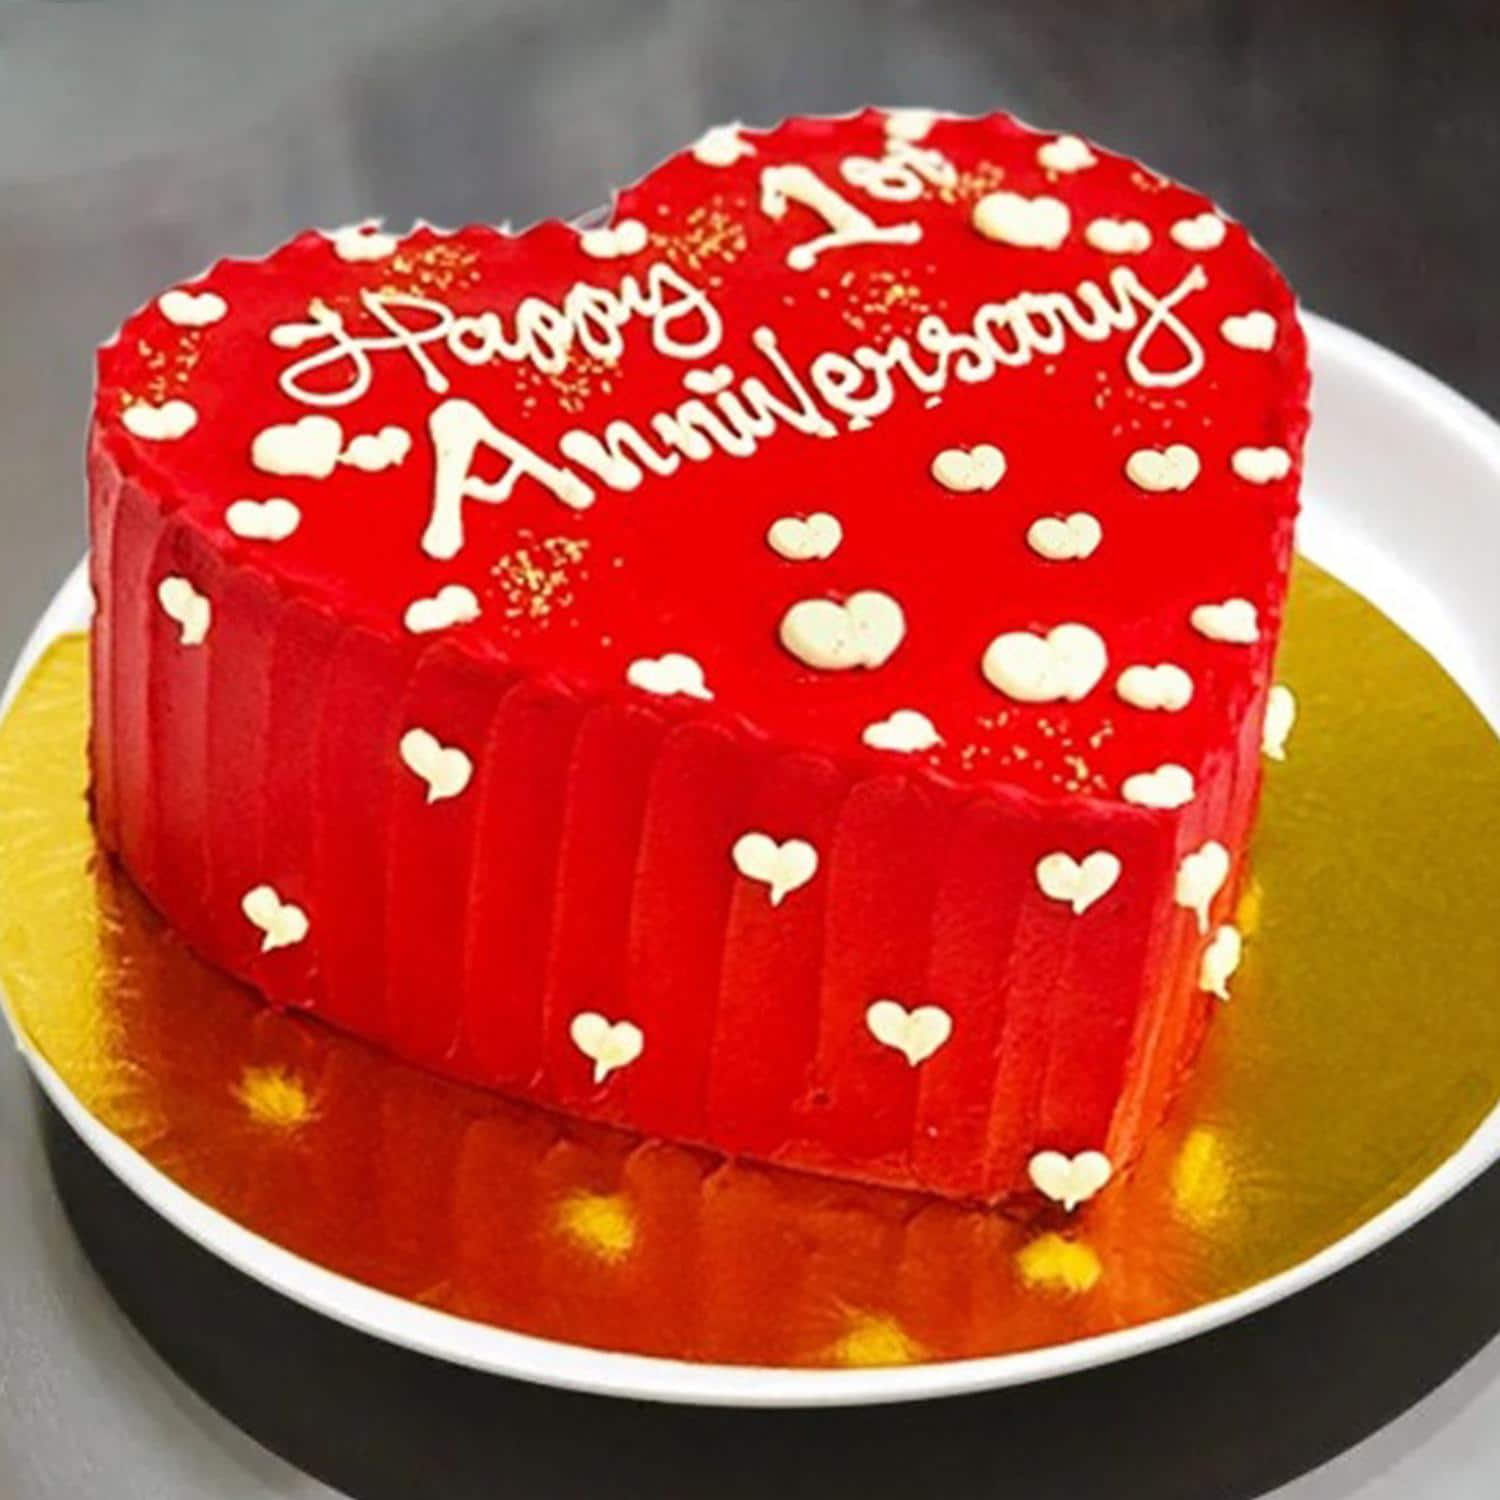 Anniversary cake 6